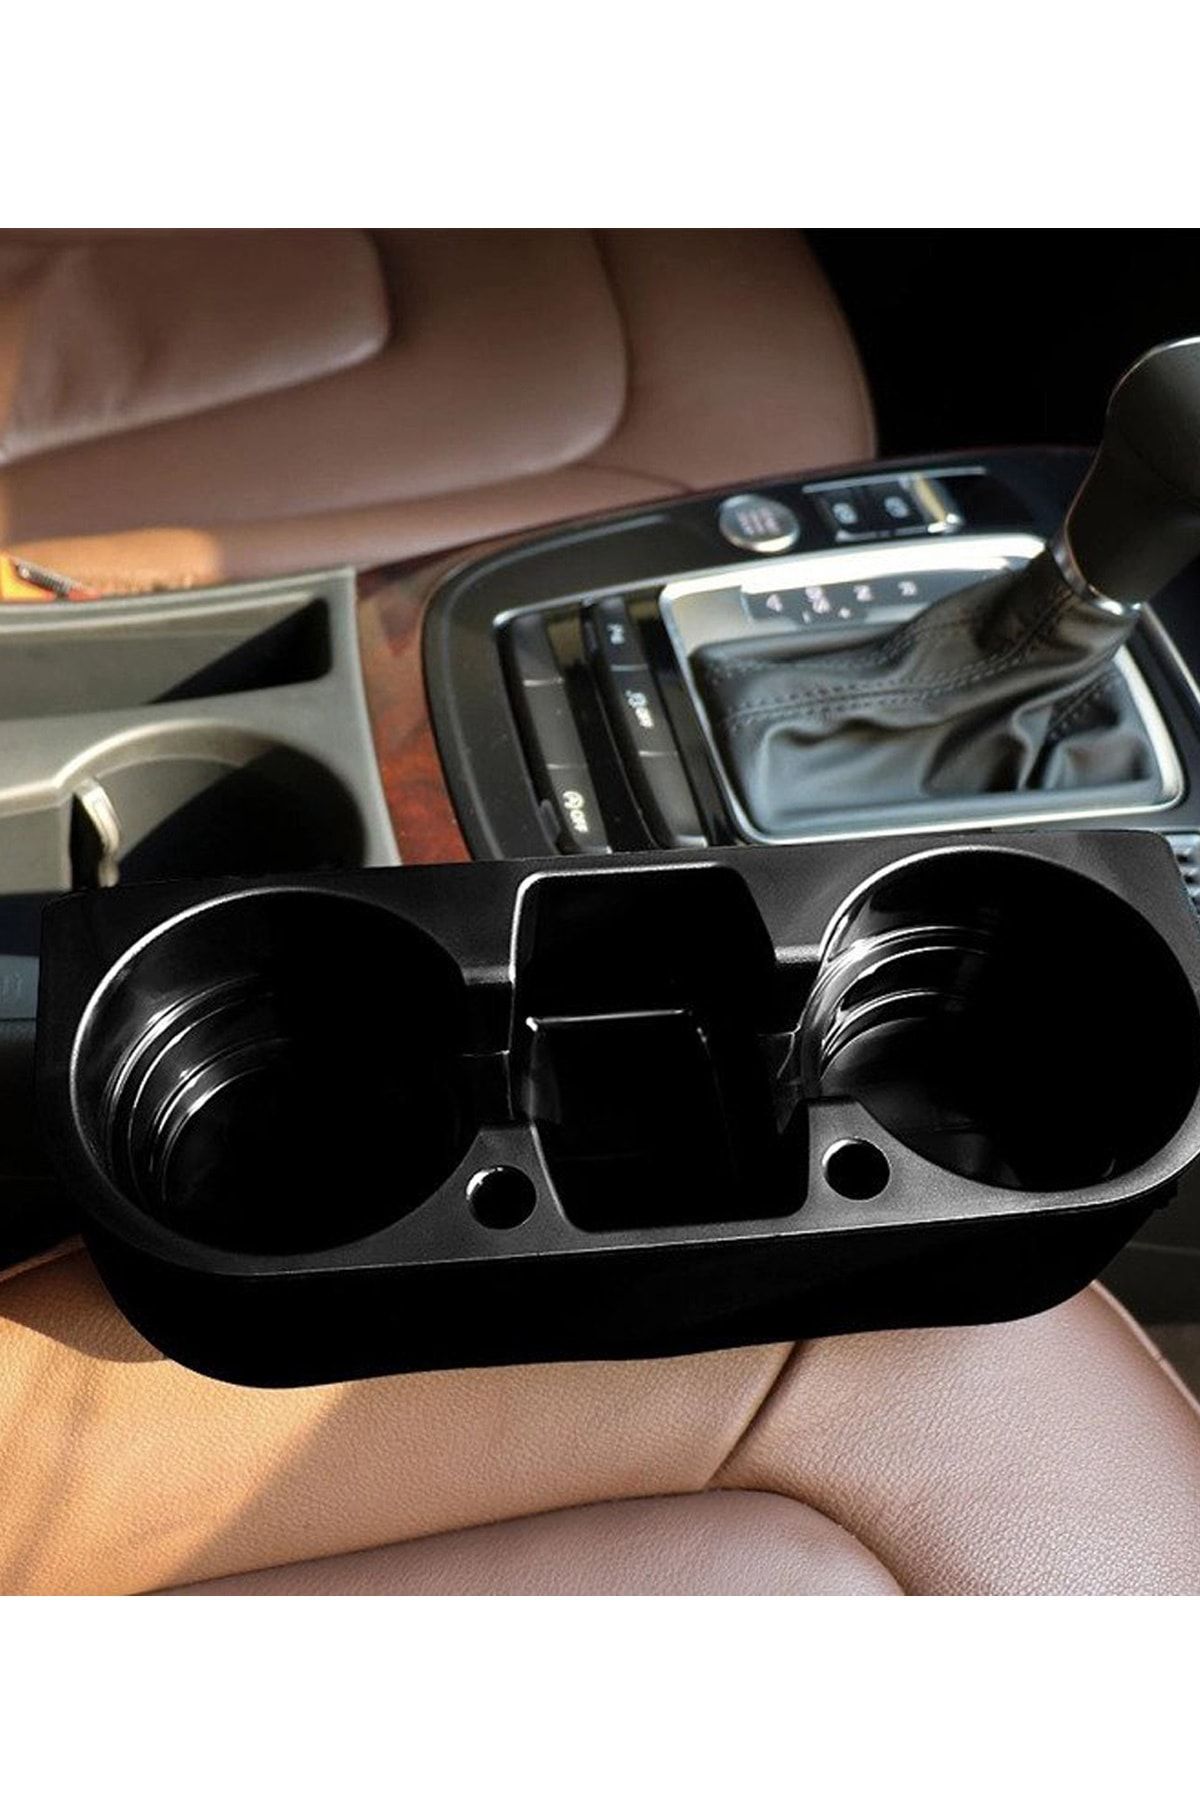 AutoFresh Mercedes 163 Torpido Ve Koltuk Başlığı Uyumlu Konsol Bardak Telefon Eşya Mp3 Tutucu Spor Konsol